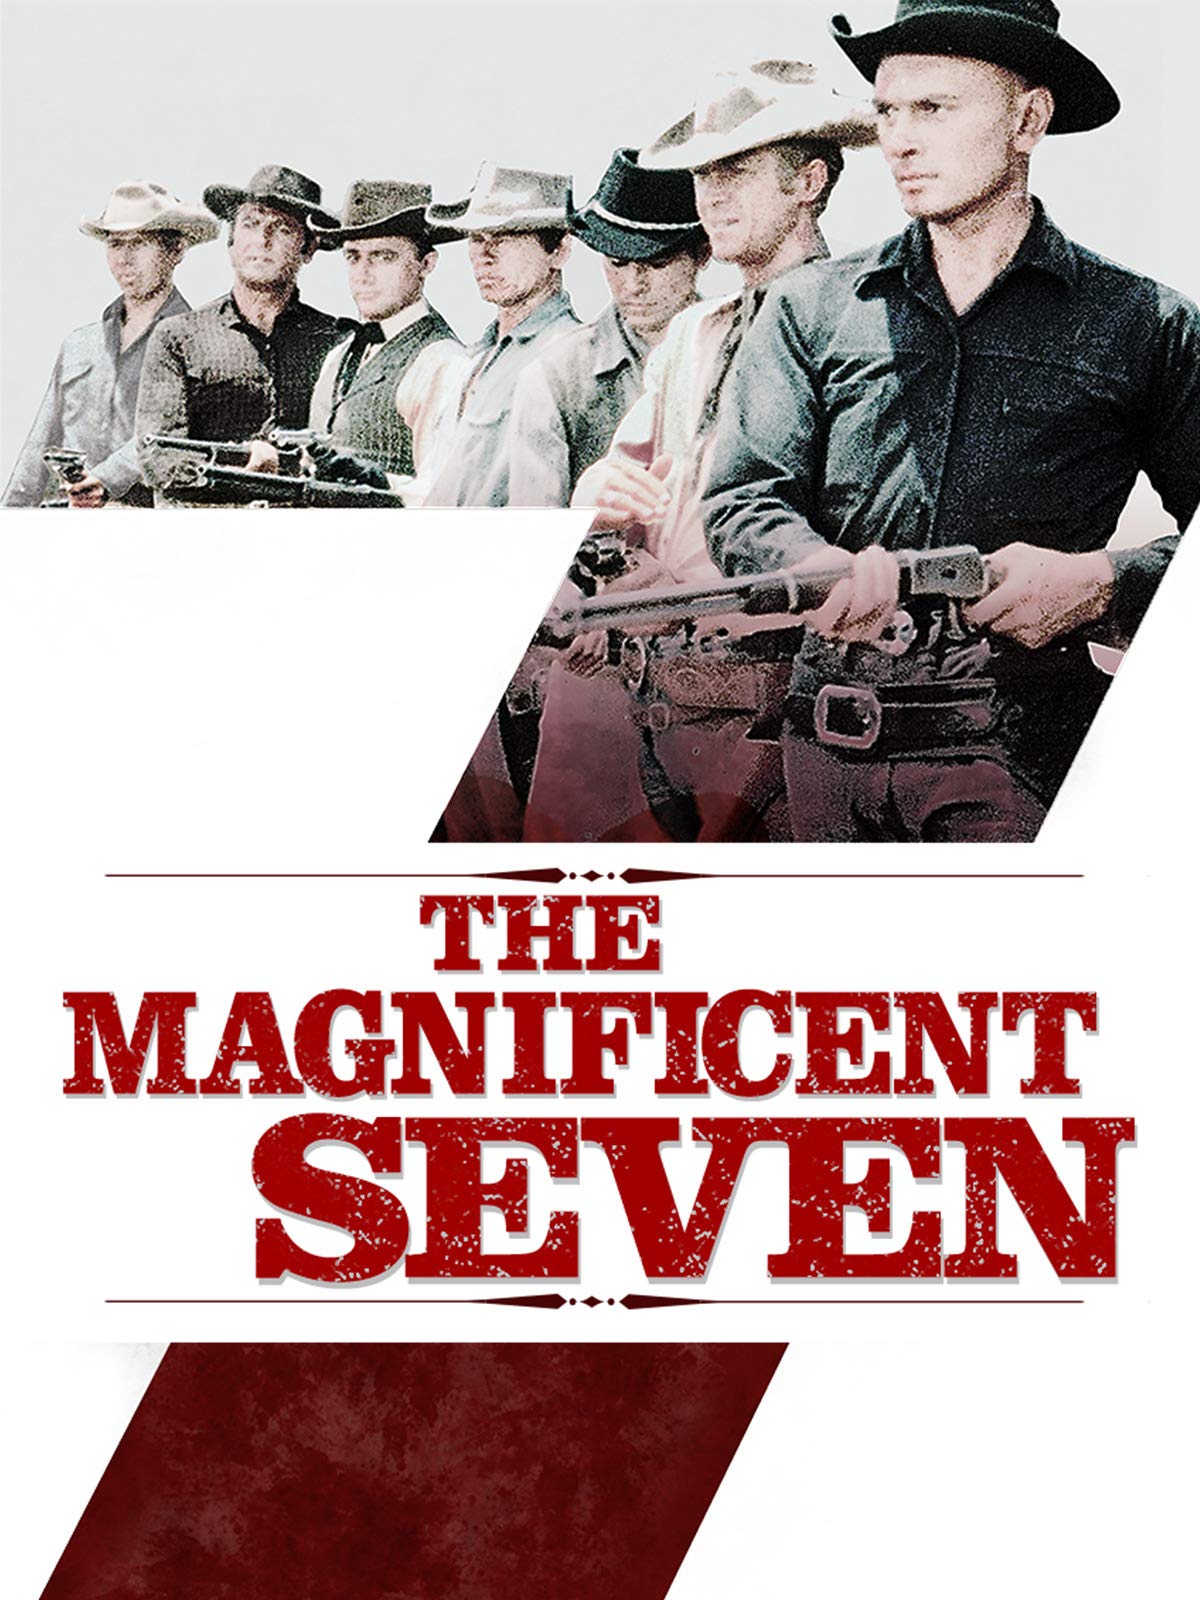 Stiahni si HD Filmy Sedm statecnych / The Magnificent Seven (1960)(CZ/EN)(1080p) = CSFD 90%